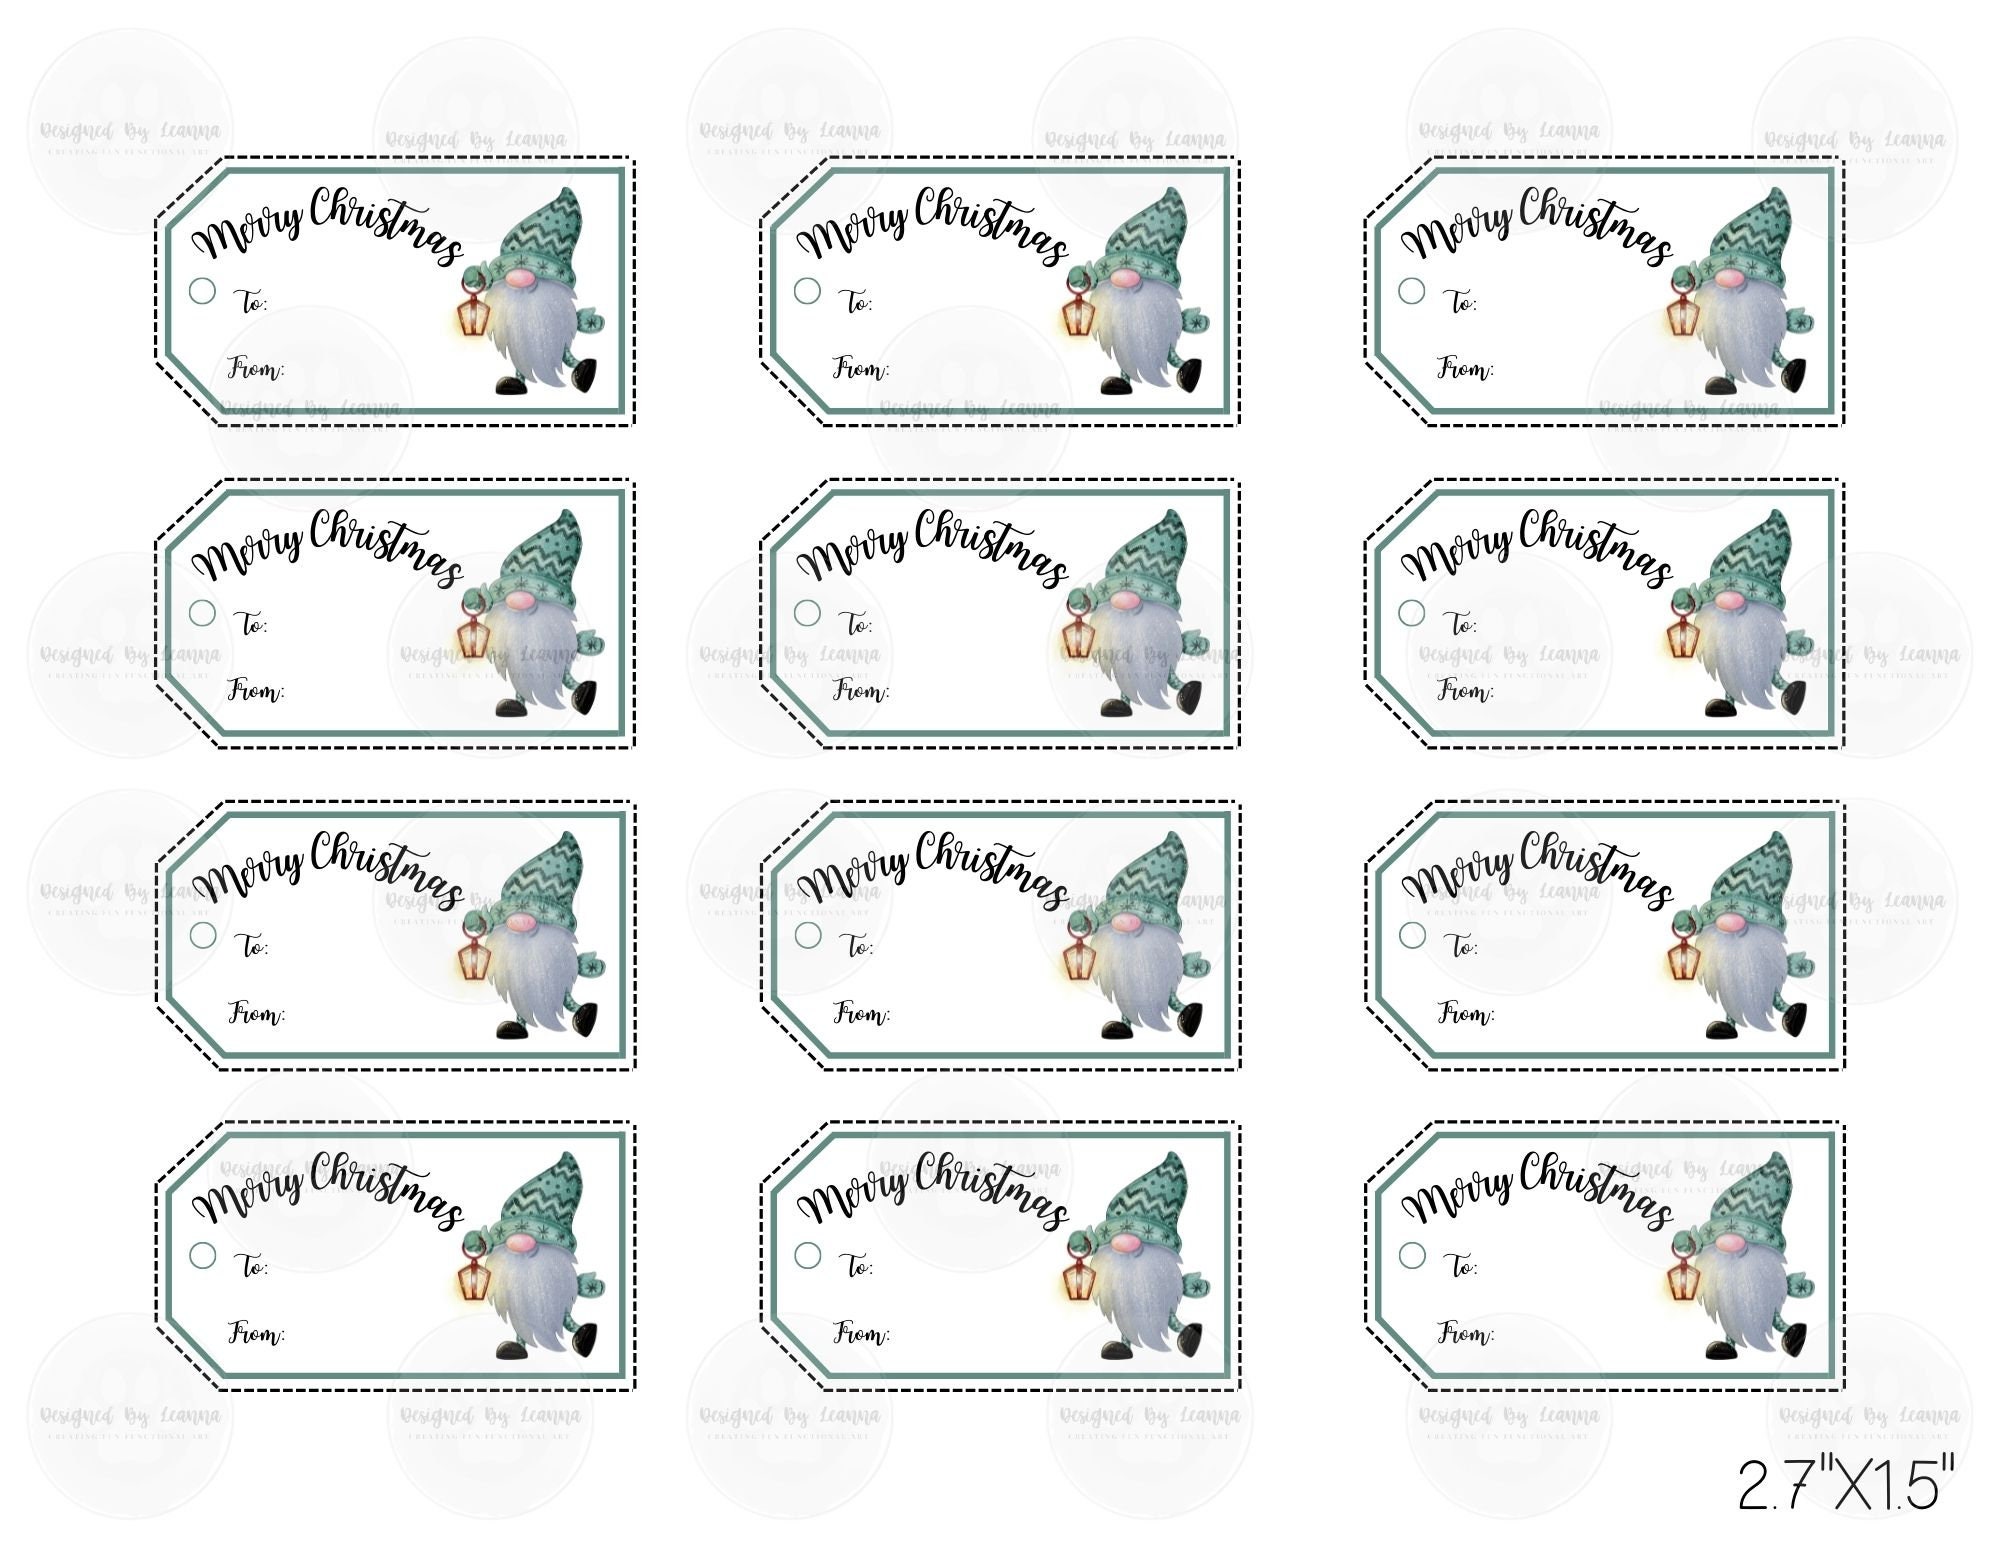 Printable Christmas Gift Tags – DESIGNS NOOK